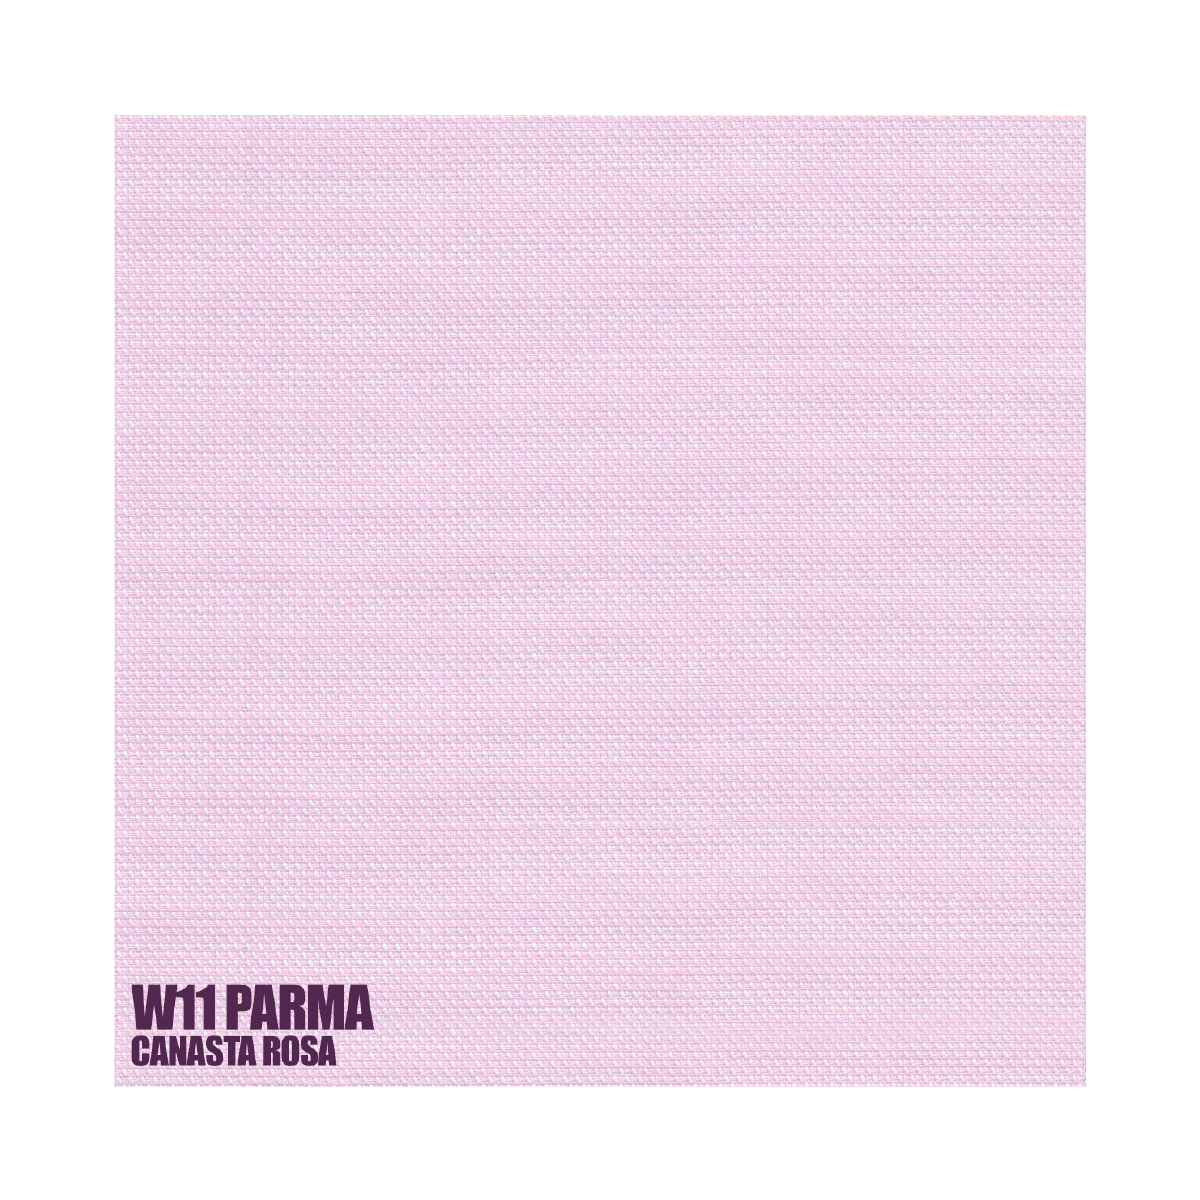 W11 Parma